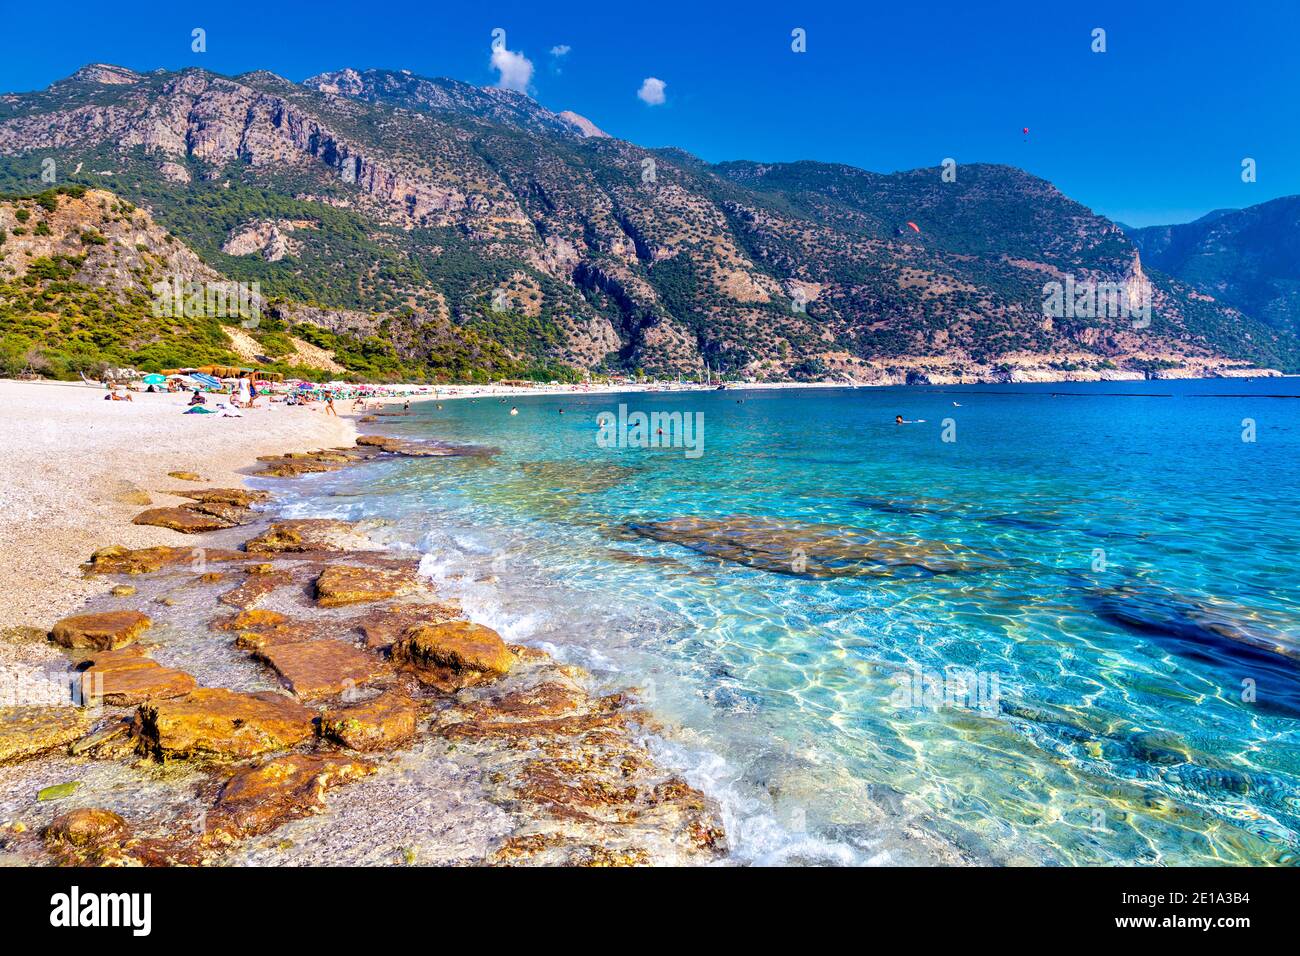 Bleu azur et plage de galets à Oludeniz, Riviera turque, Turquie Banque D'Images